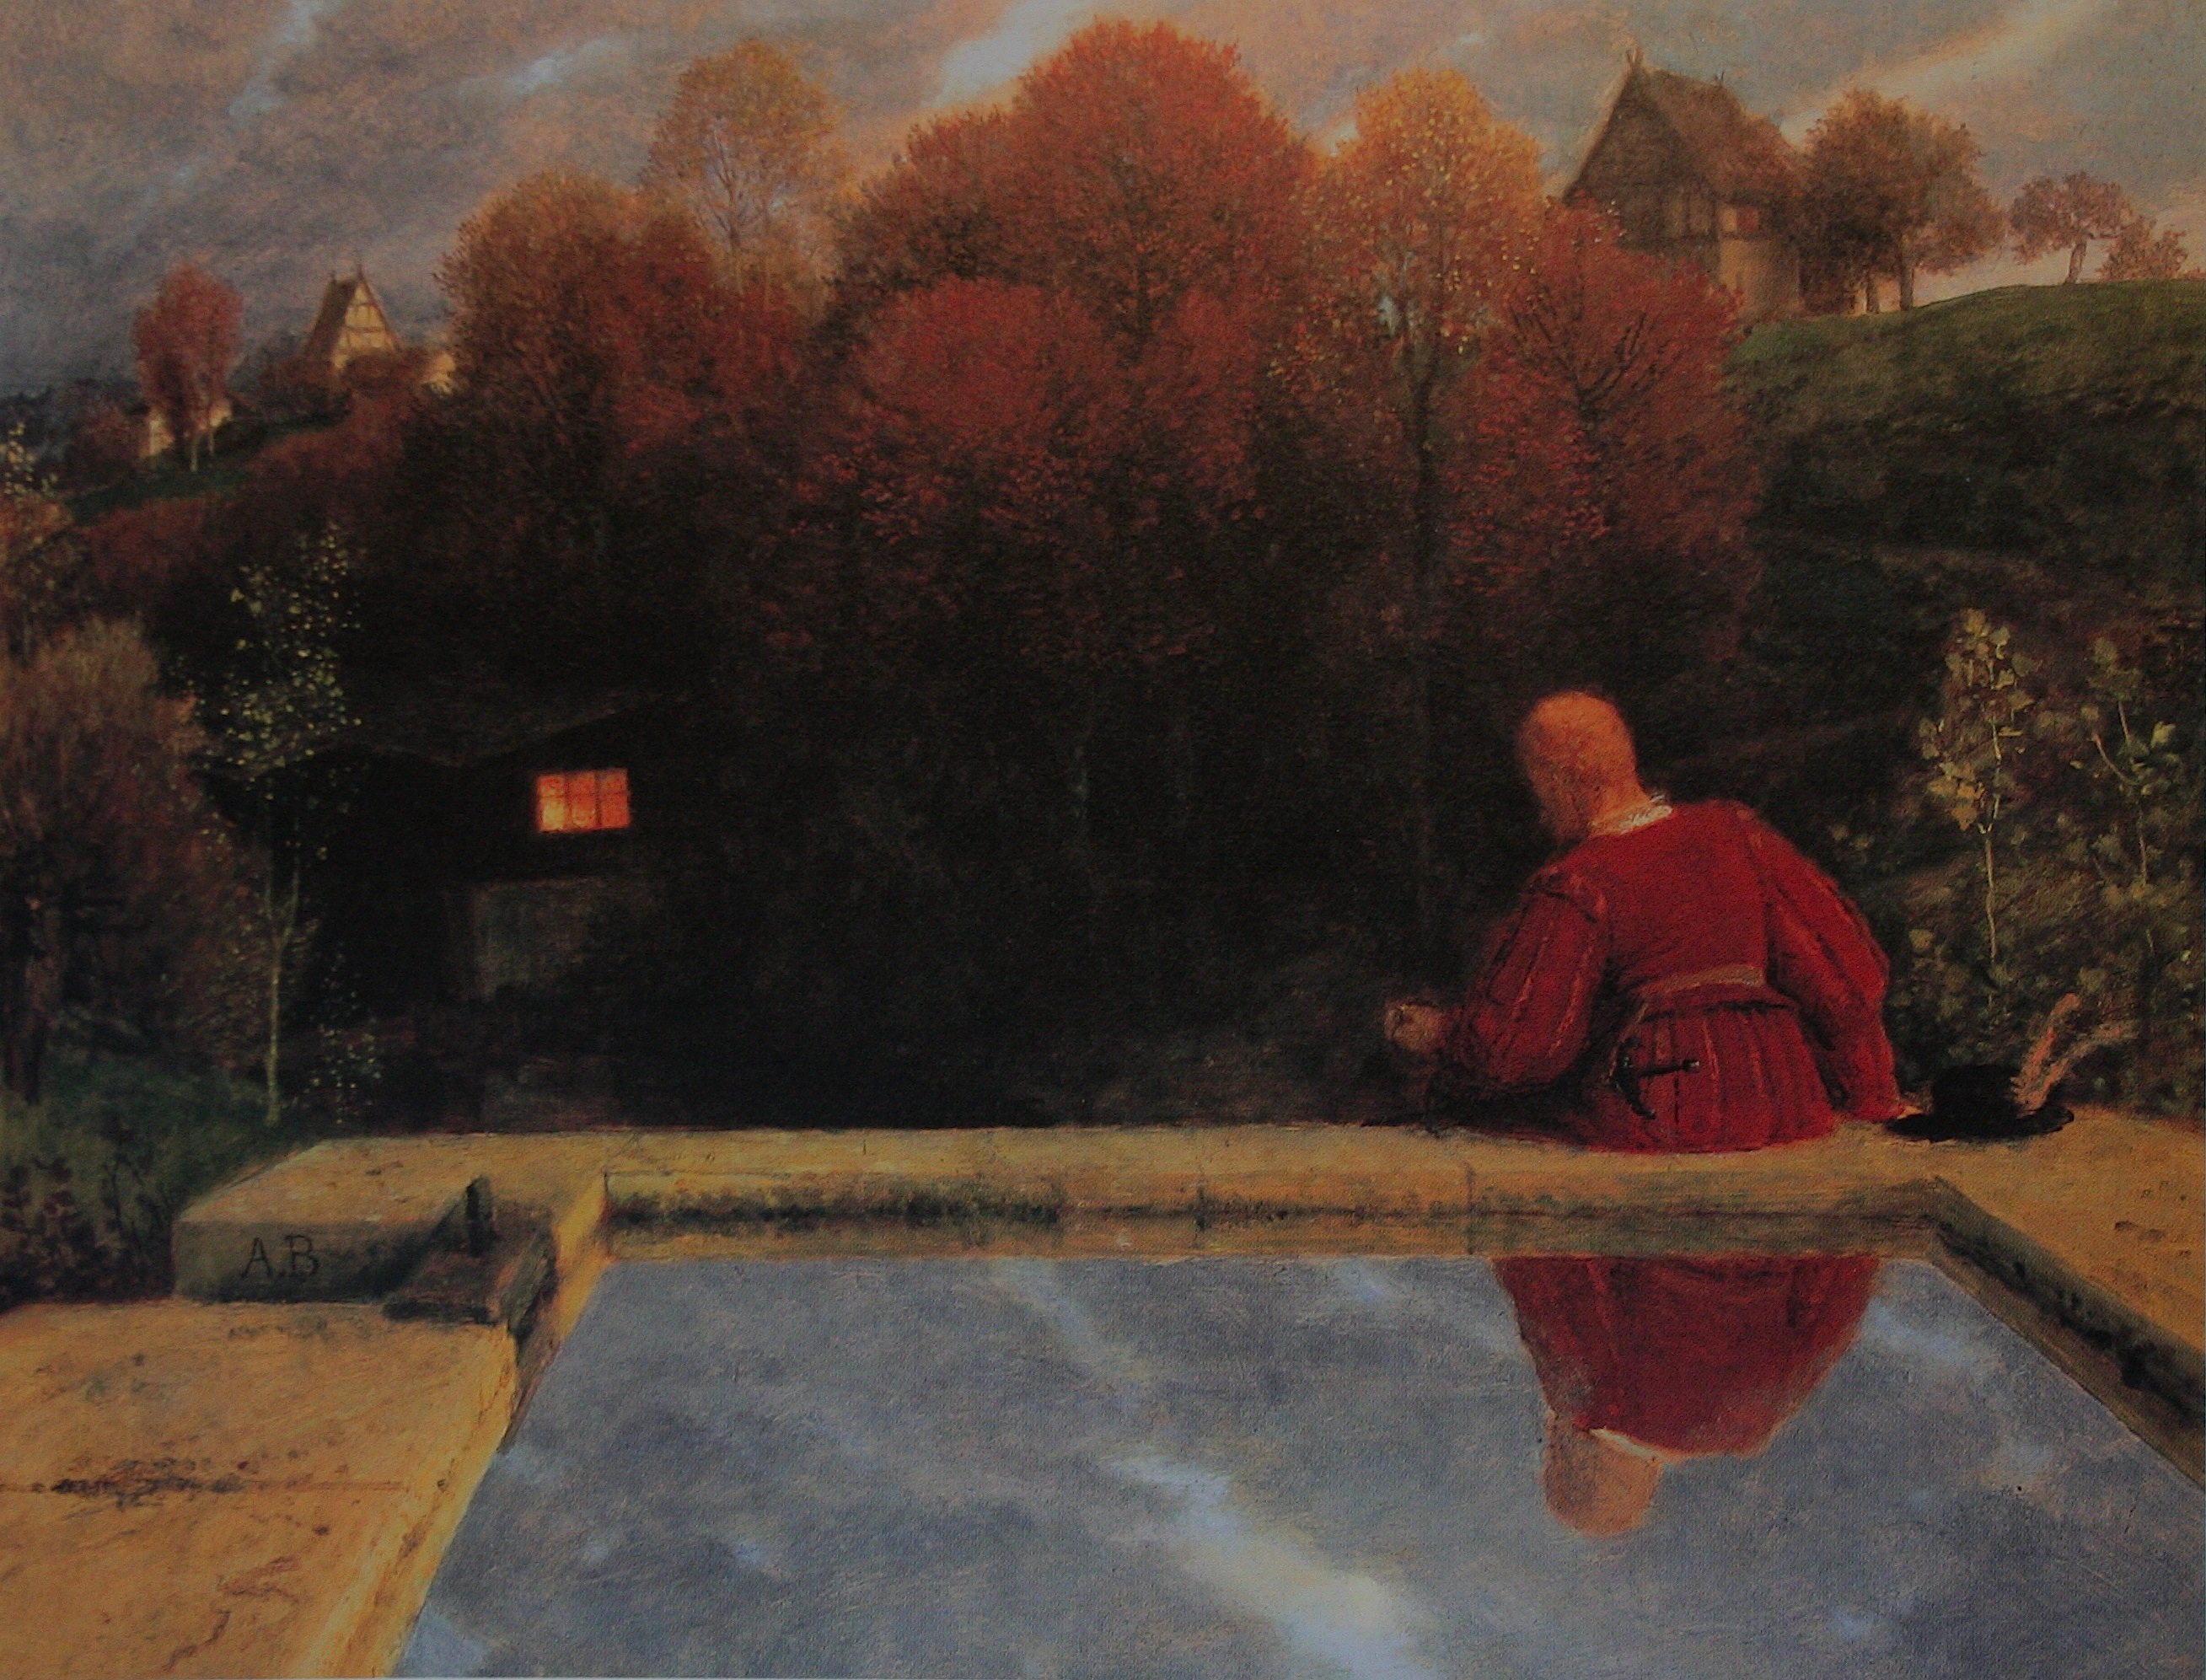 El regreso a Casa by Arnold Böcklin - 1887 Colección privada